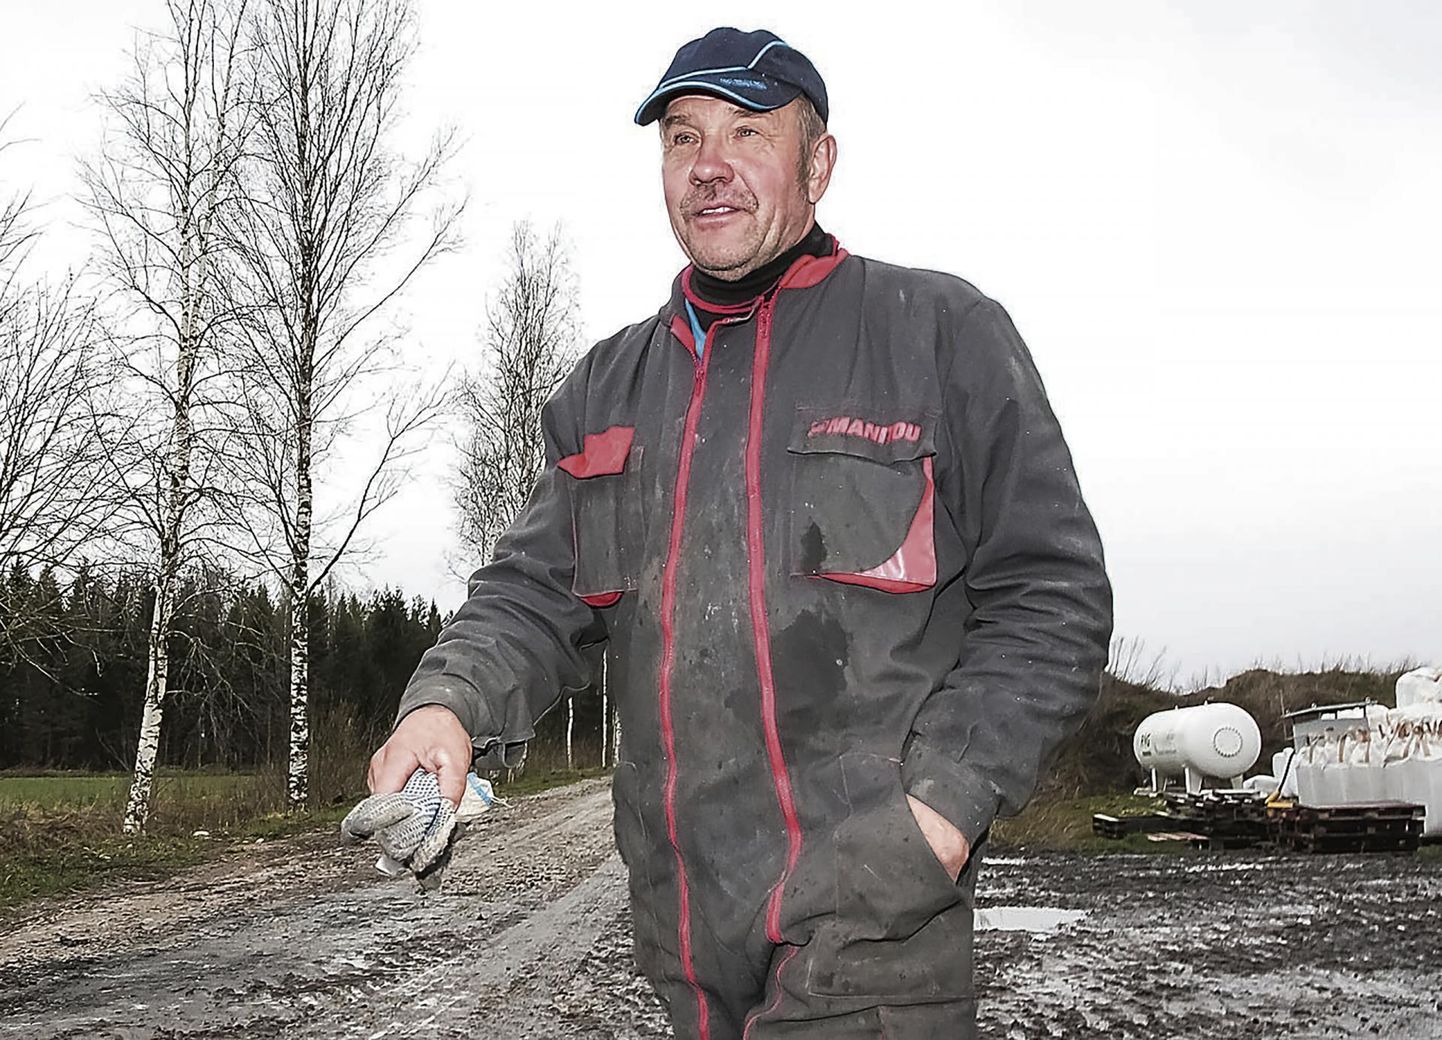 PRIA nõuab Soosaare pere ettevõtmistelt tagasi üle miljoni toetuseuro. Pildil Rein Soosaar Tammekäära talust.